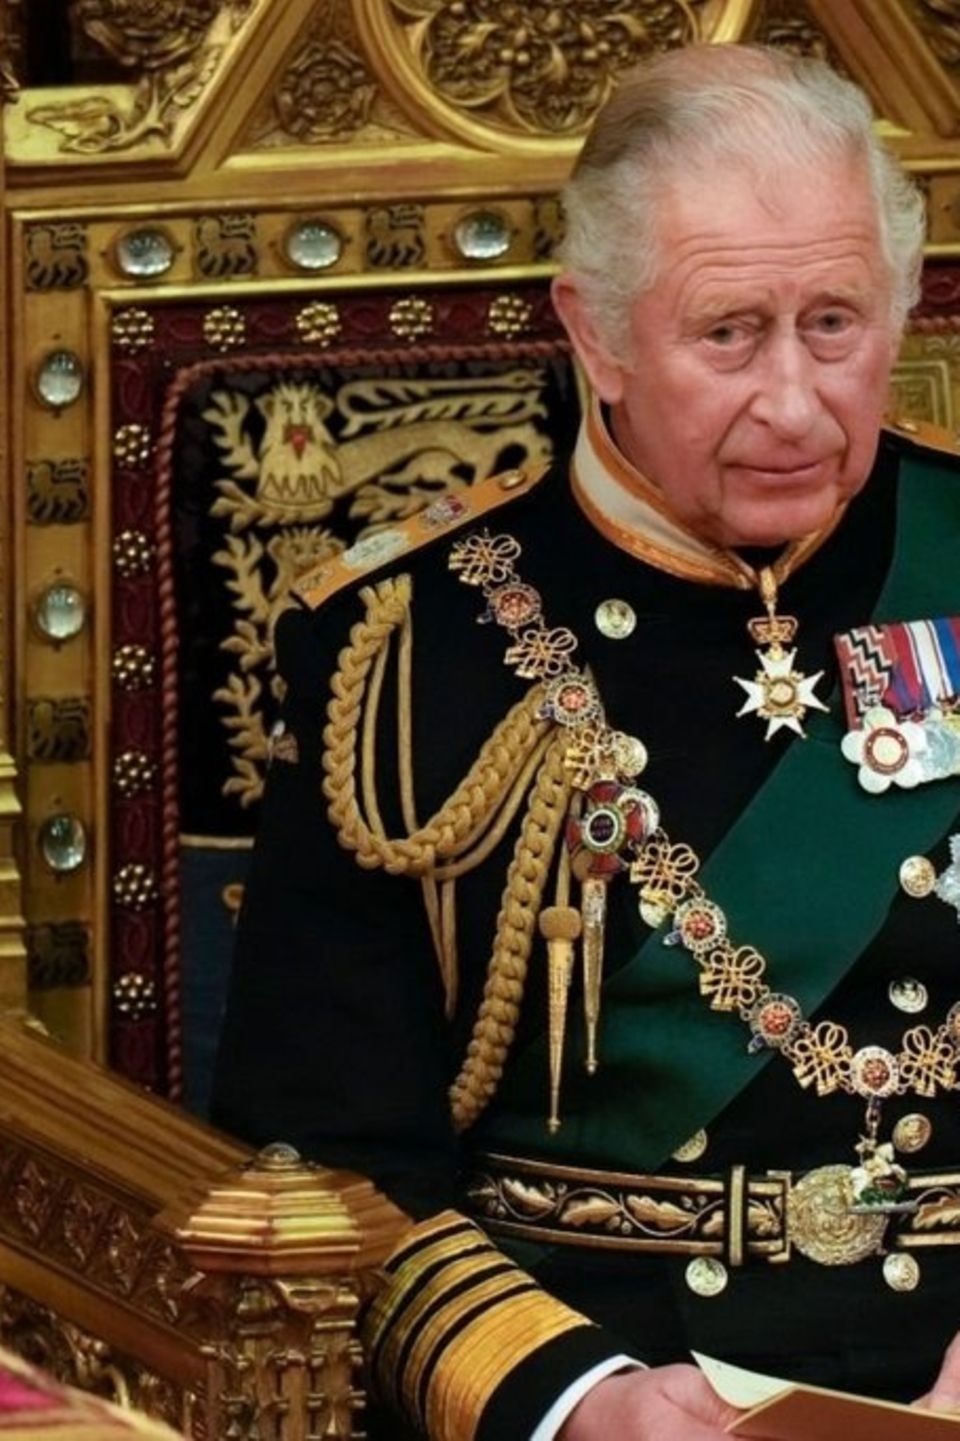 König Charles III. kommt in den Besitz eines neuen Schwerts.